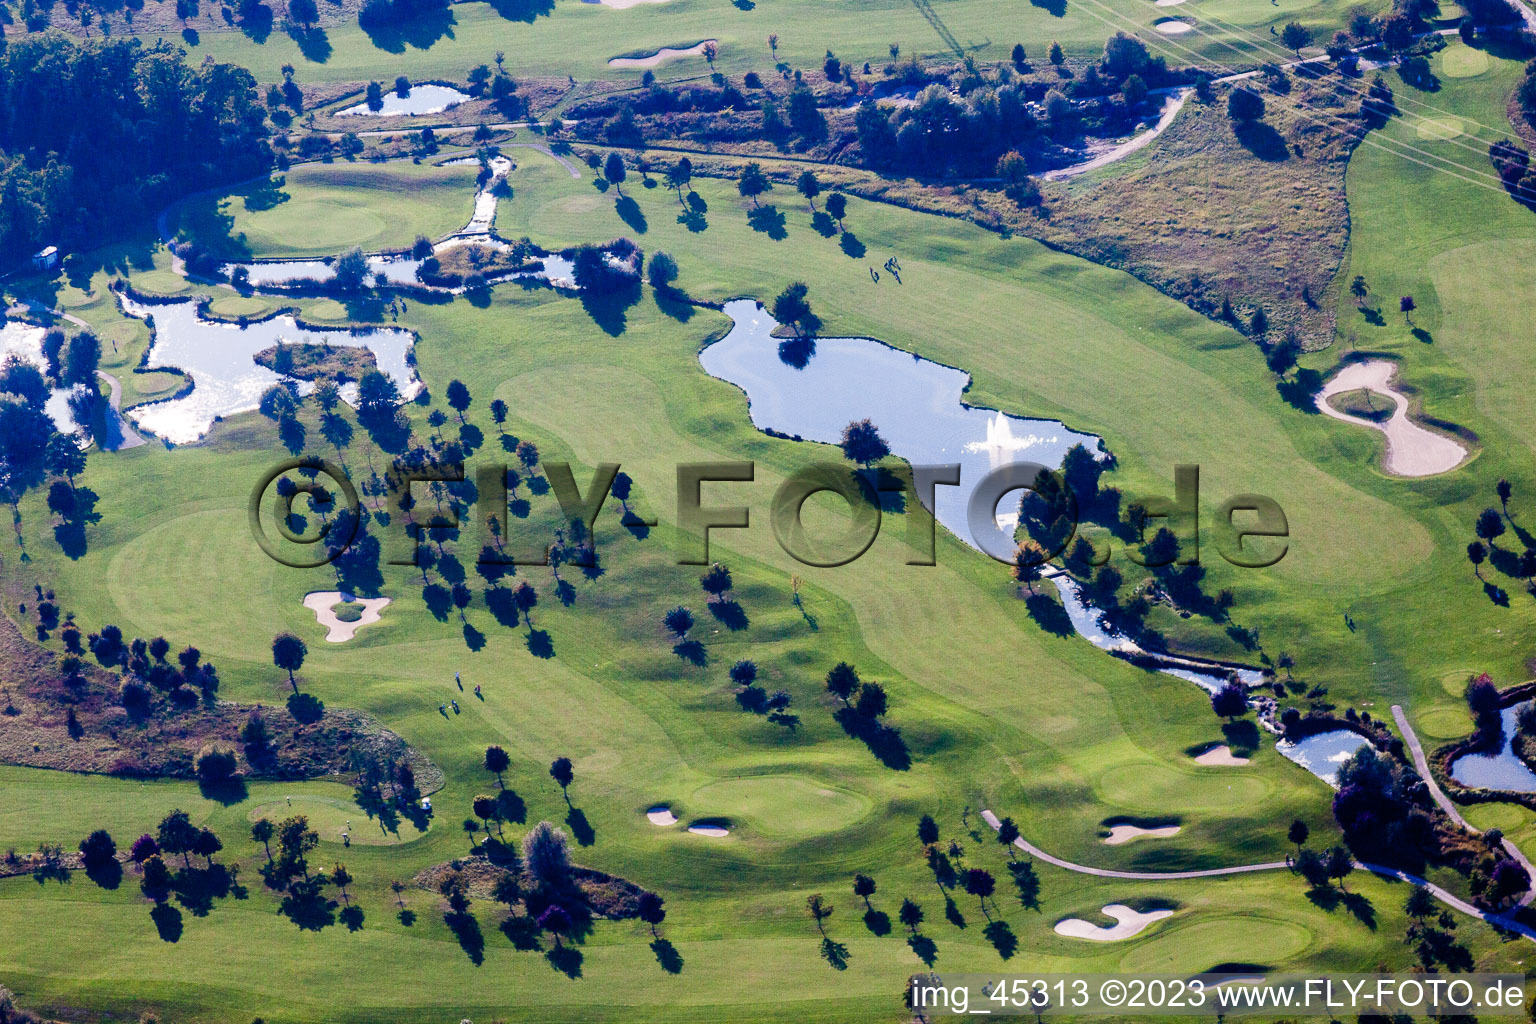 Luftbild von Hofgut Scheibenhardt Golfclub in Ettlingen im Bundesland Baden-Württemberg, Deutschland